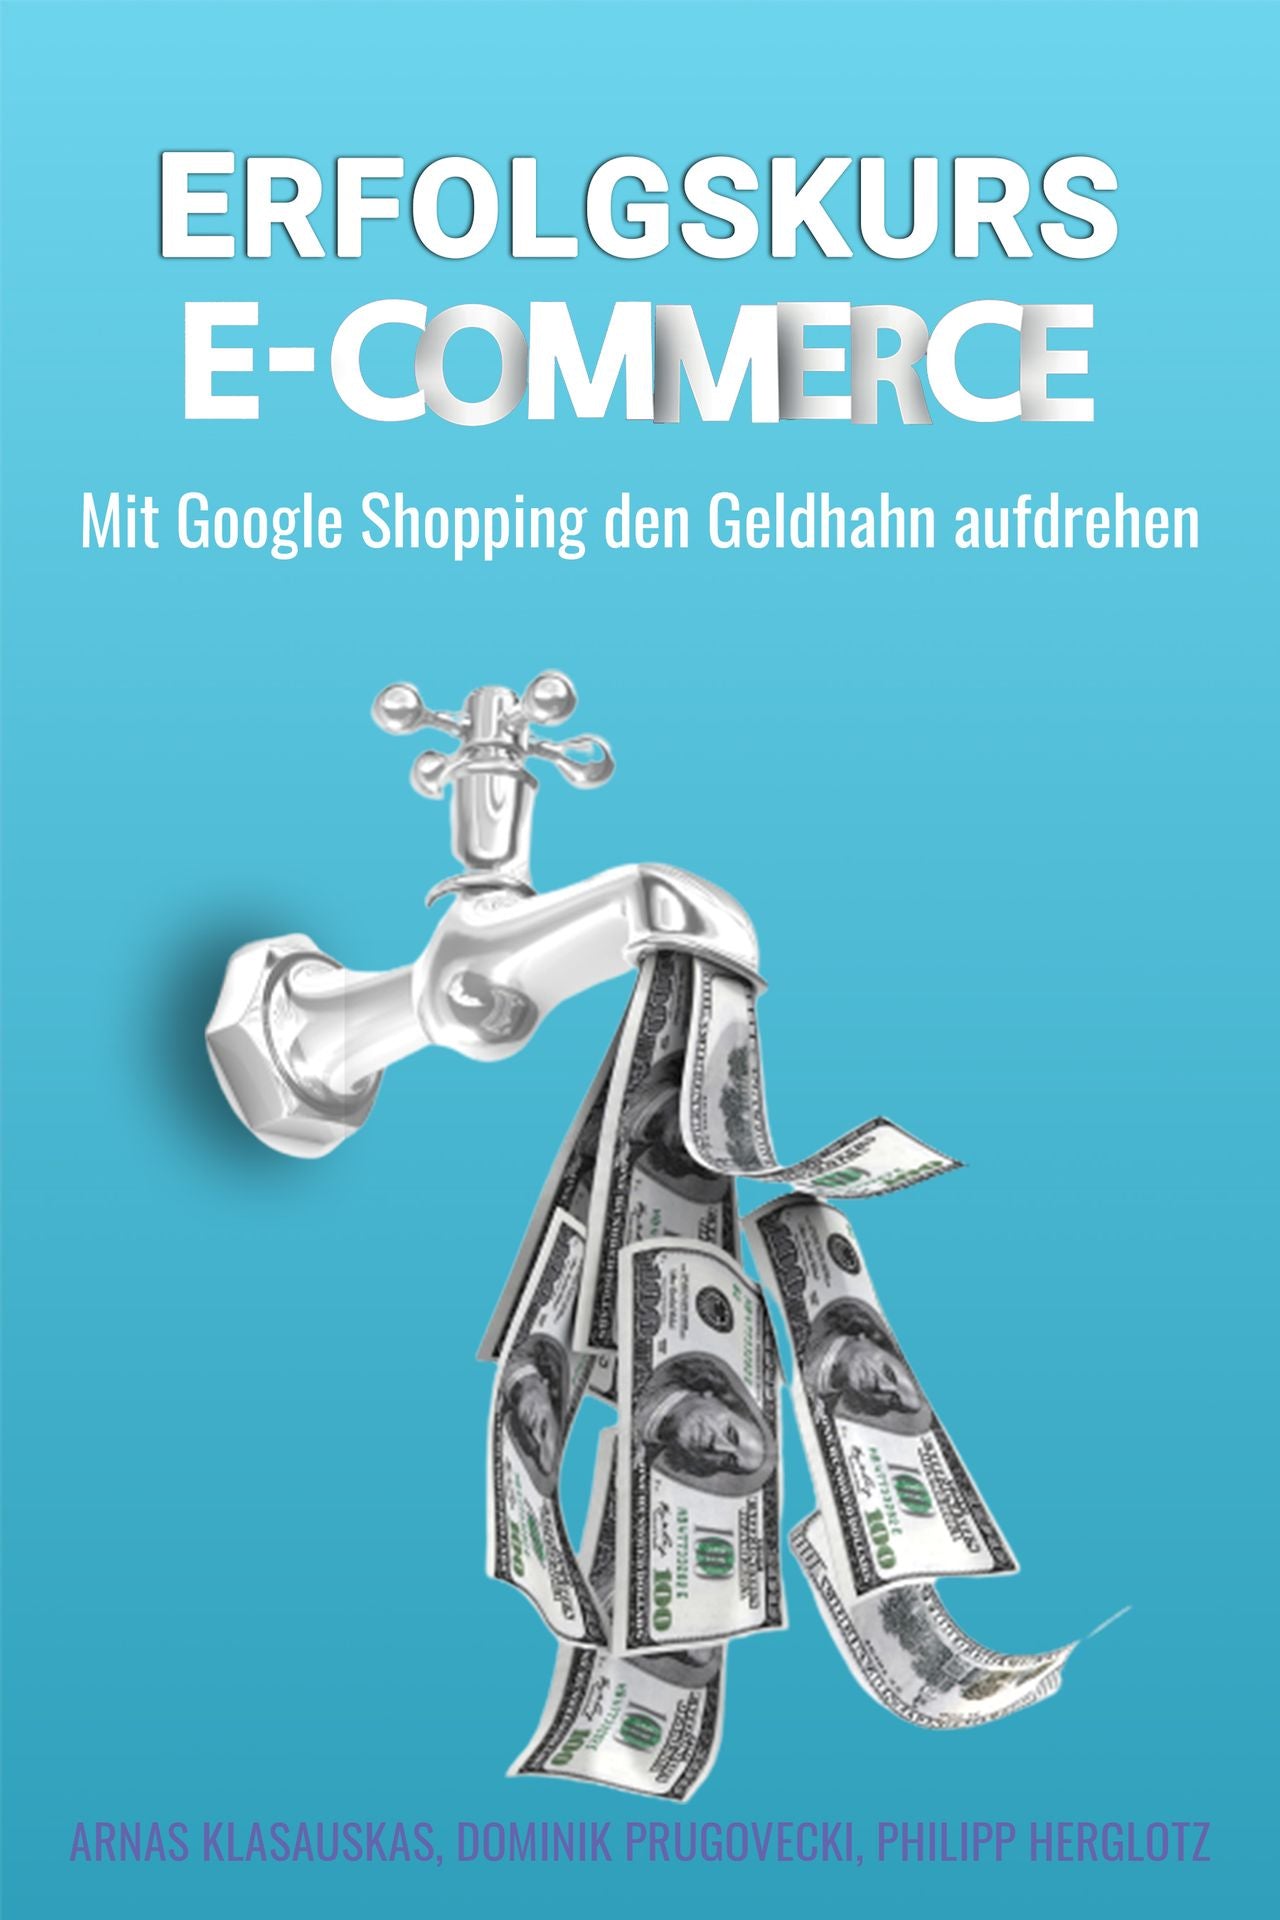 Erfolgskurs E-Commerce: Mit Google Shopping den Geldhahn aufdrehen (eBook-Ausgabe)